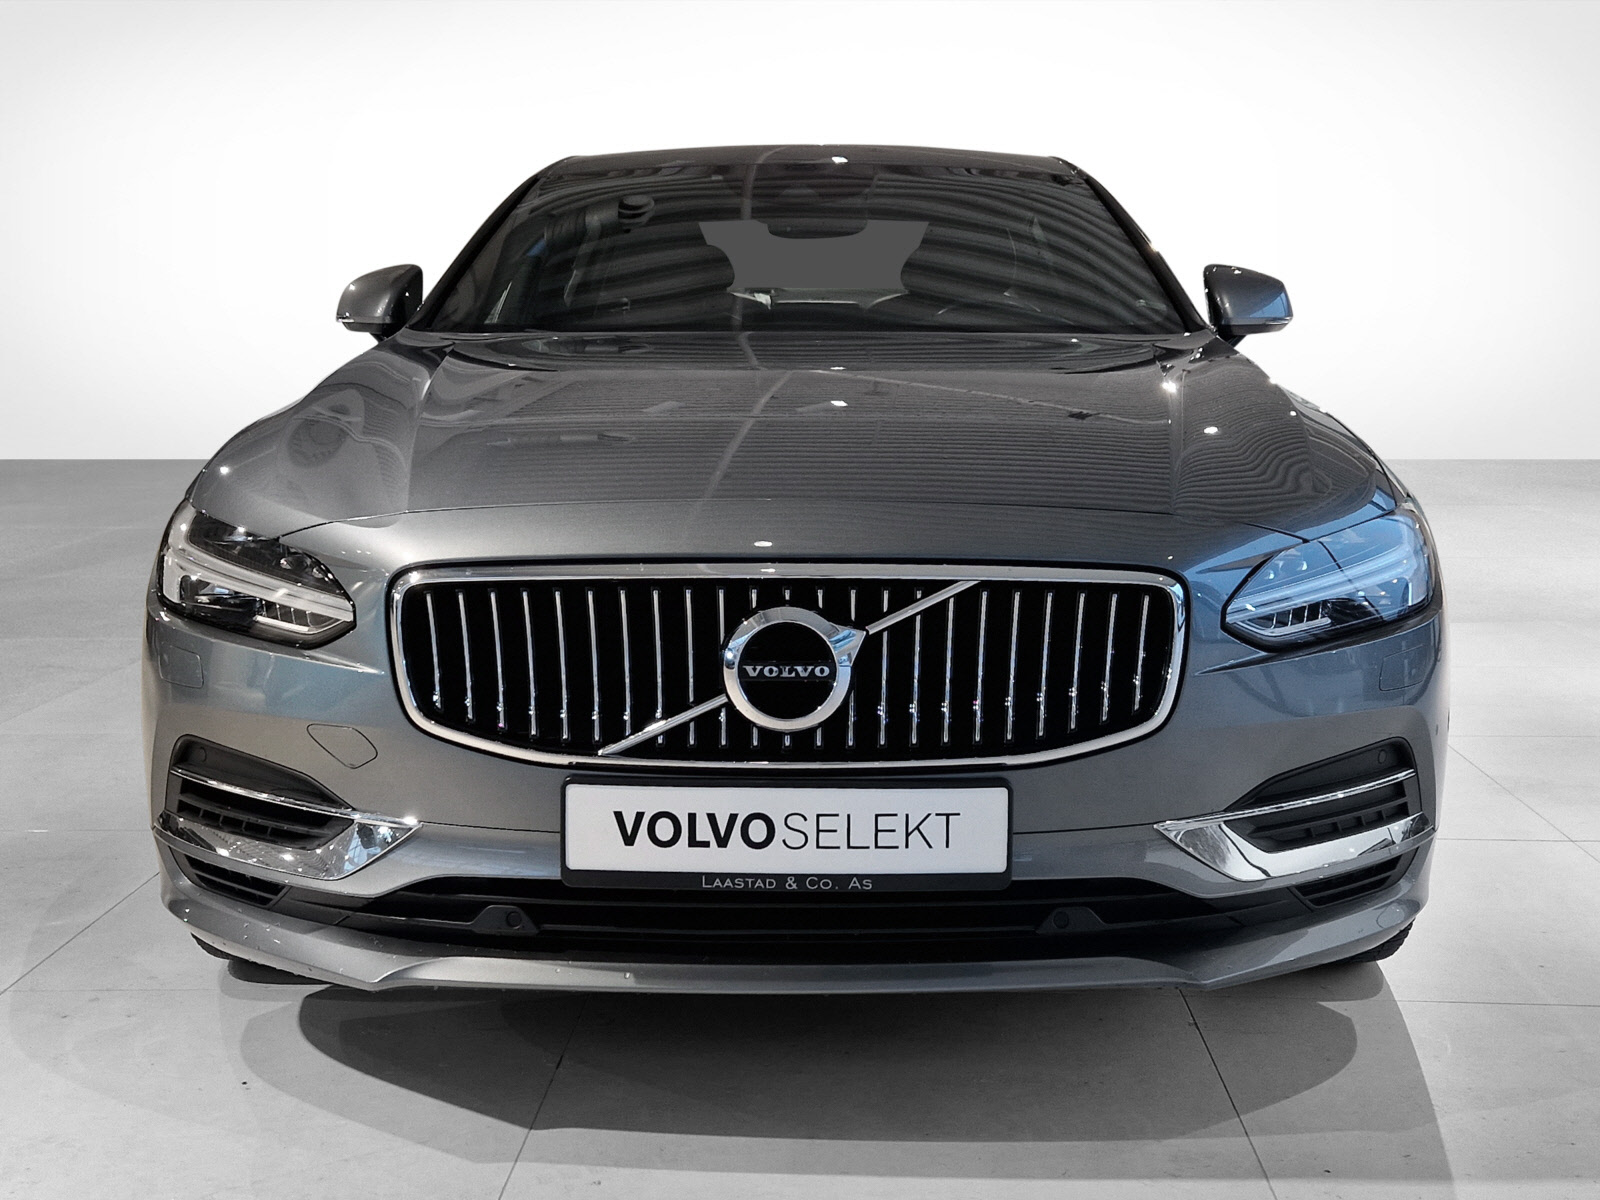 2018 Volvo S90 T8 407hk Inscription Pro AWD aut image